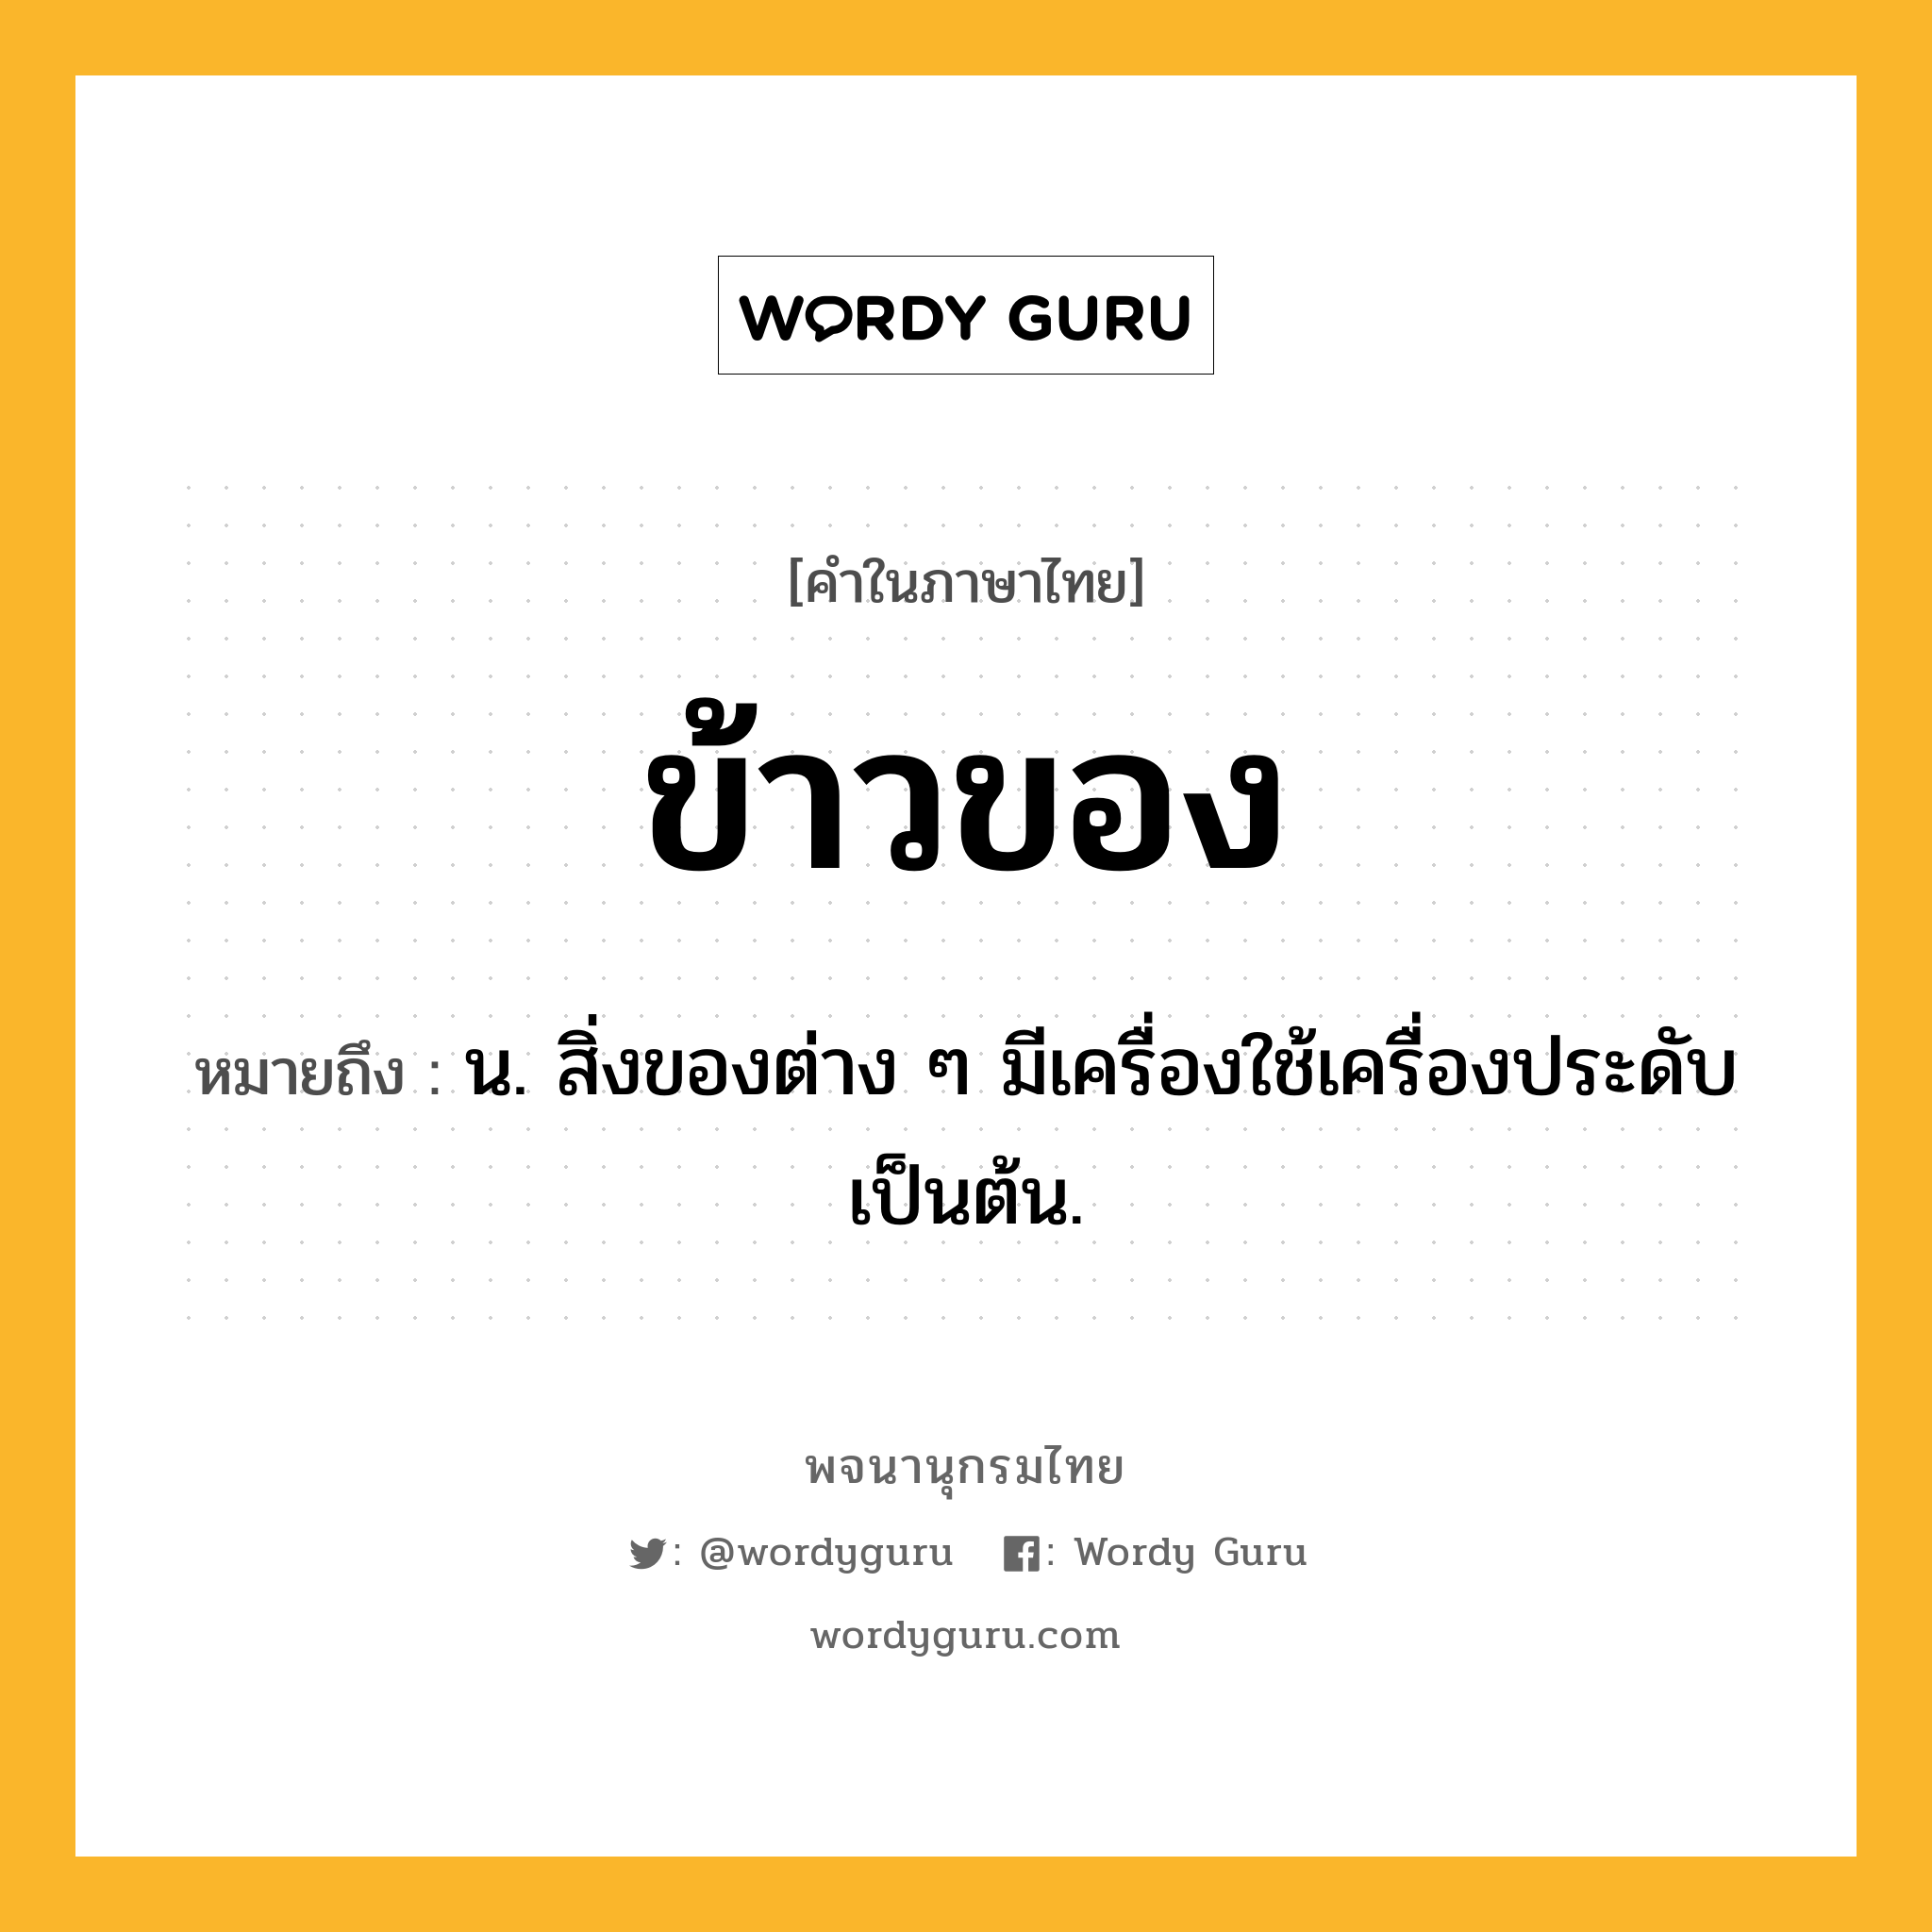 ข้าวของ หมายถึงอะไร?, คำในภาษาไทย ข้าวของ หมายถึง น. สิ่งของต่าง ๆ มีเครื่องใช้เครื่องประดับเป็นต้น.